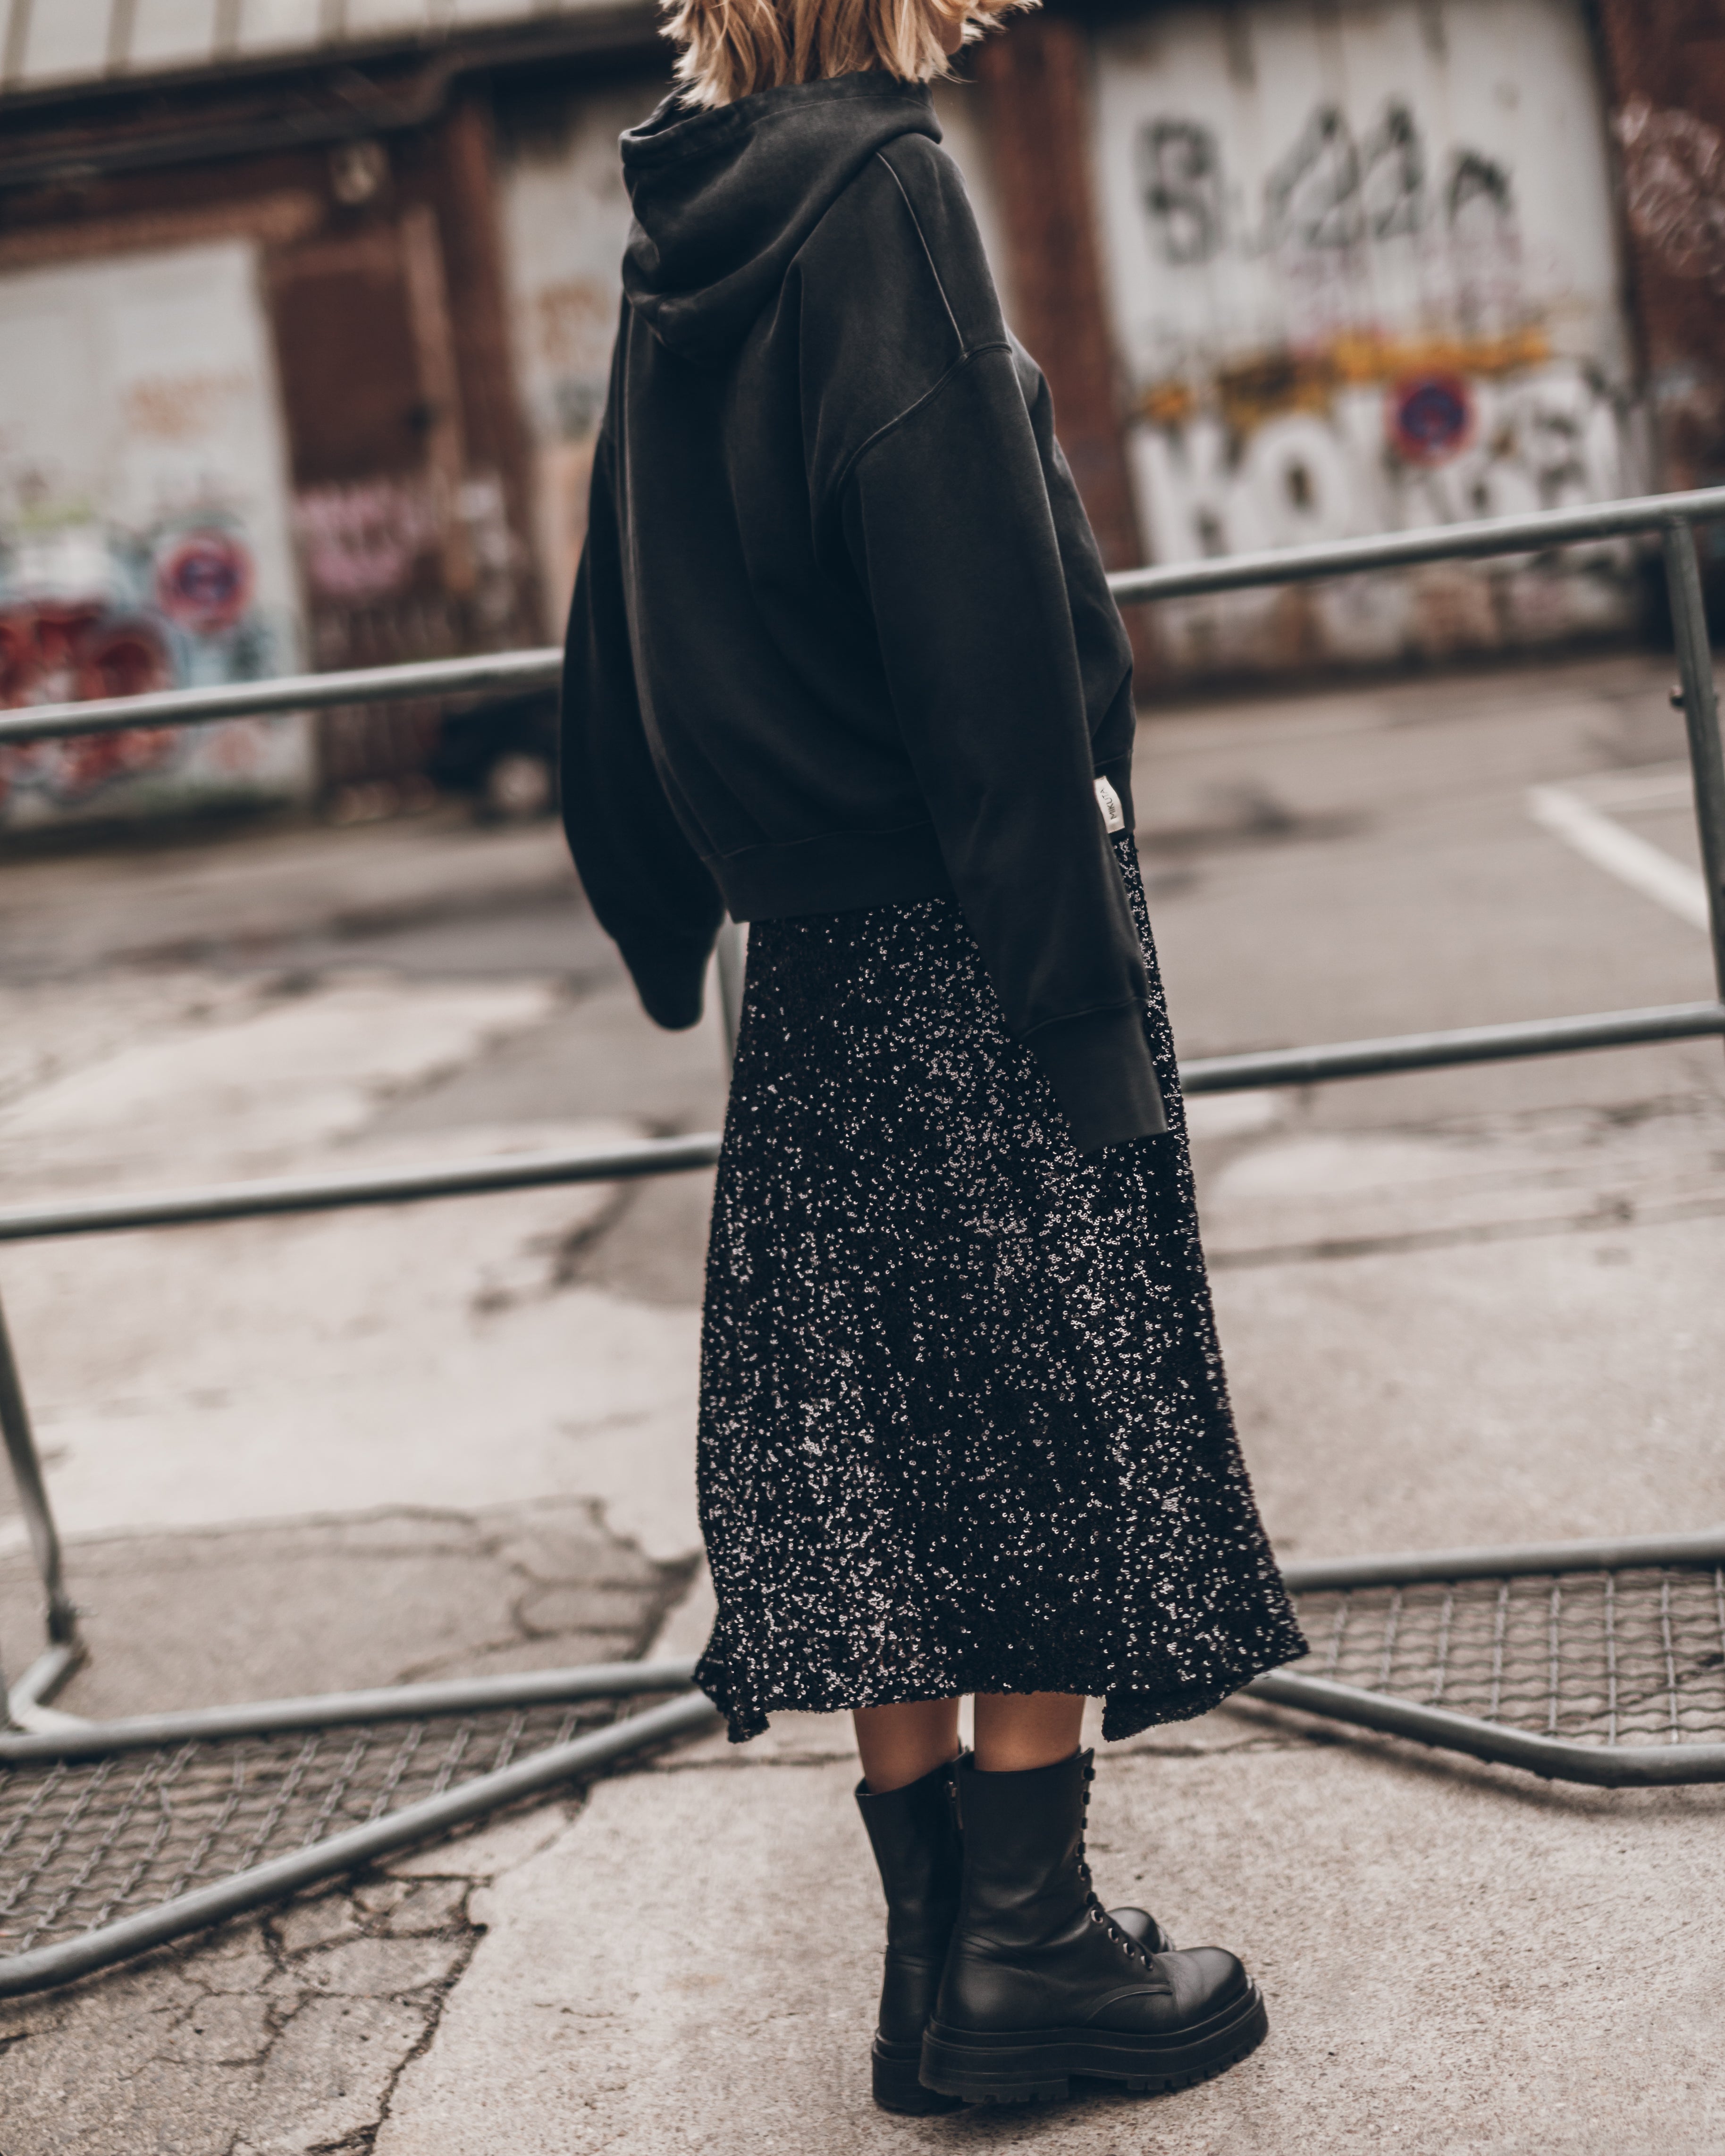 The Black Long Sequin Skirt